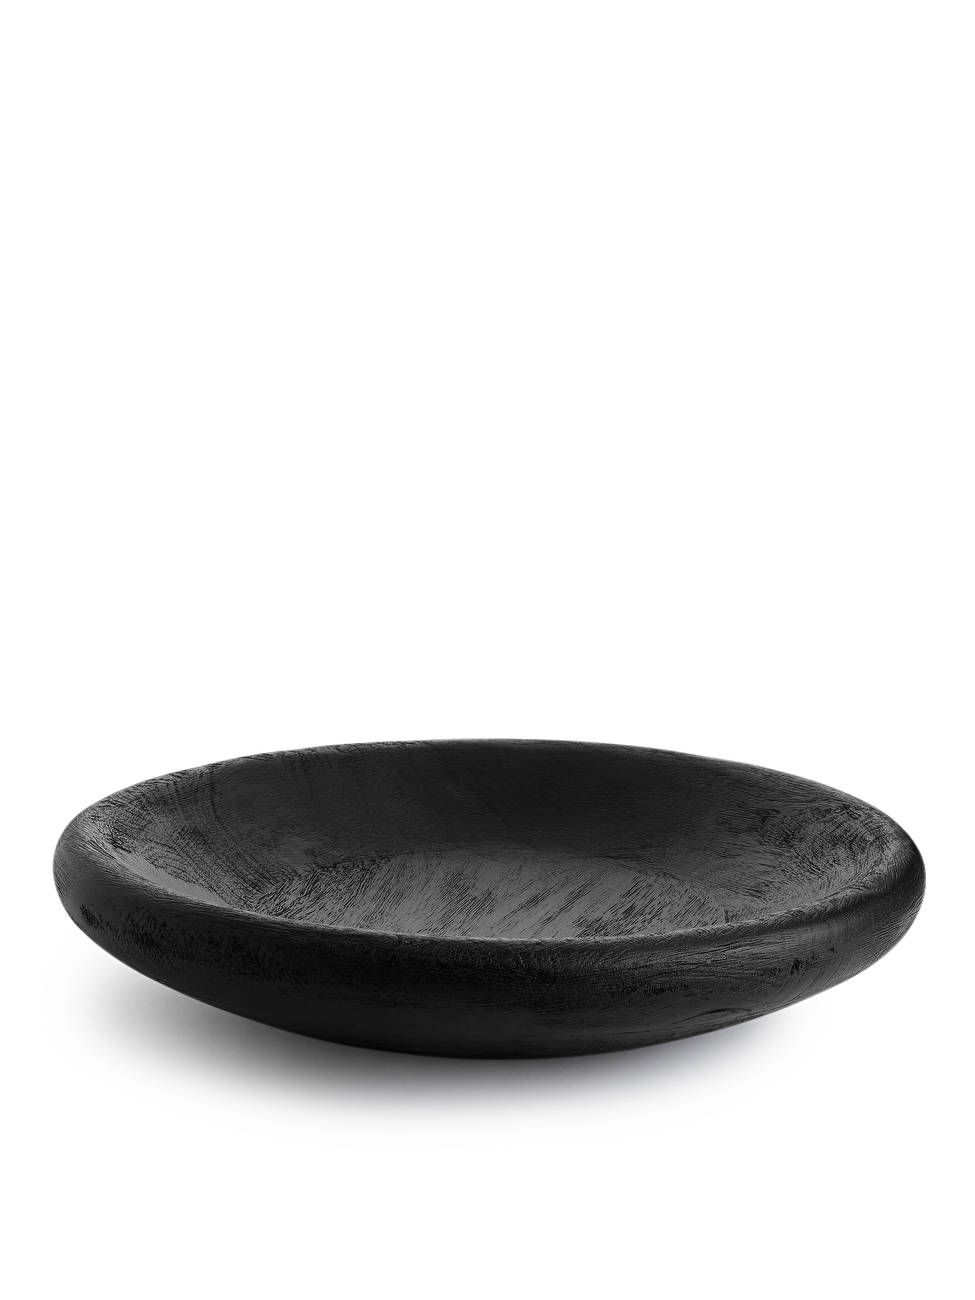 Wooden Serving Bowl - Black - ARKET GB | ARKET (US&UK)